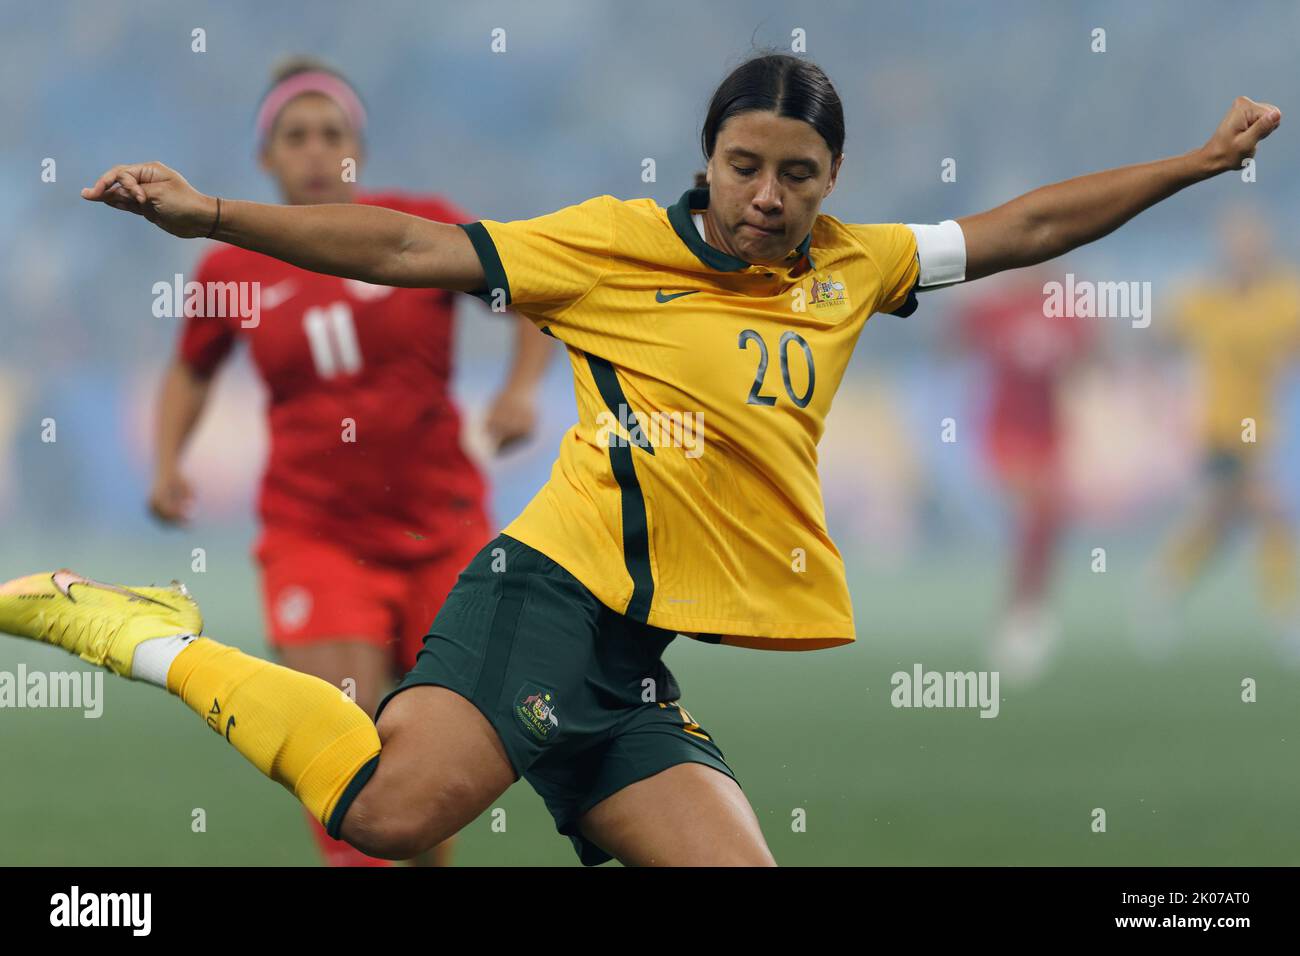 SYDNEY, AUSTRALIA - SETTEMBRE 6: Sam Kerr d'Australia calcia la palla durante l'International friendly Match tra Australia e Canada ad Allianz Foto Stock